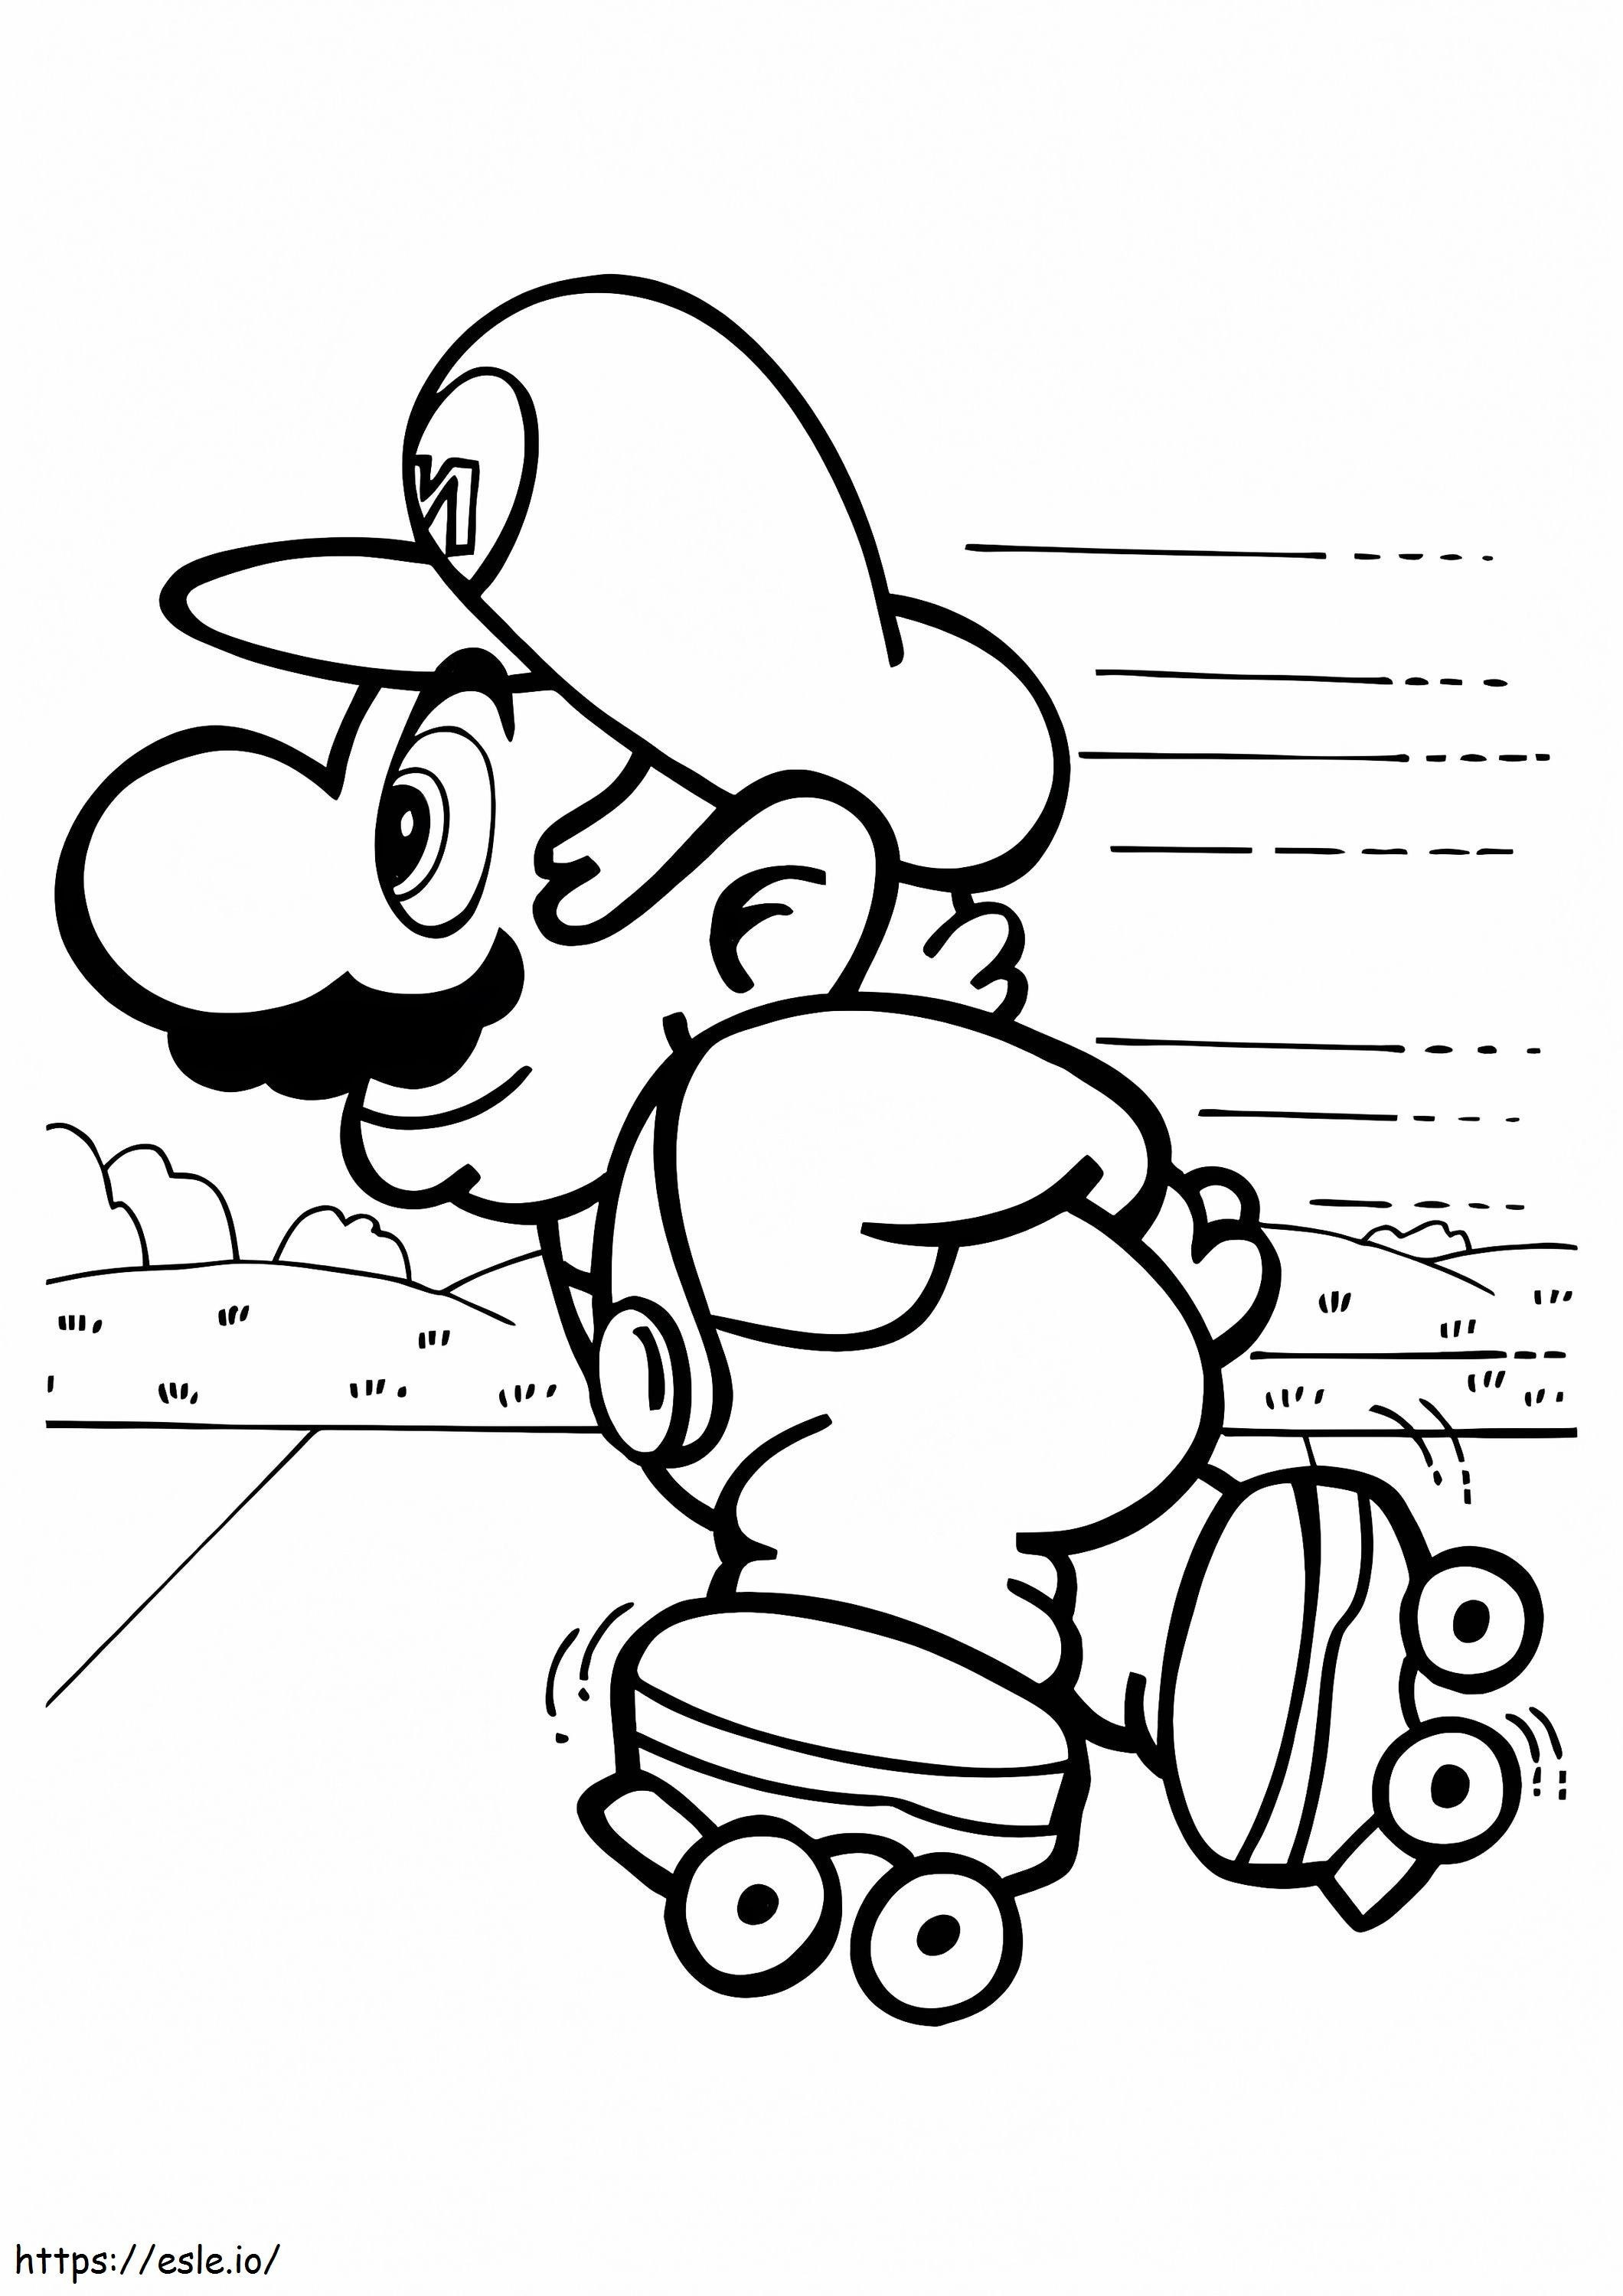 Mario auf Rollschuhen ausmalbilder